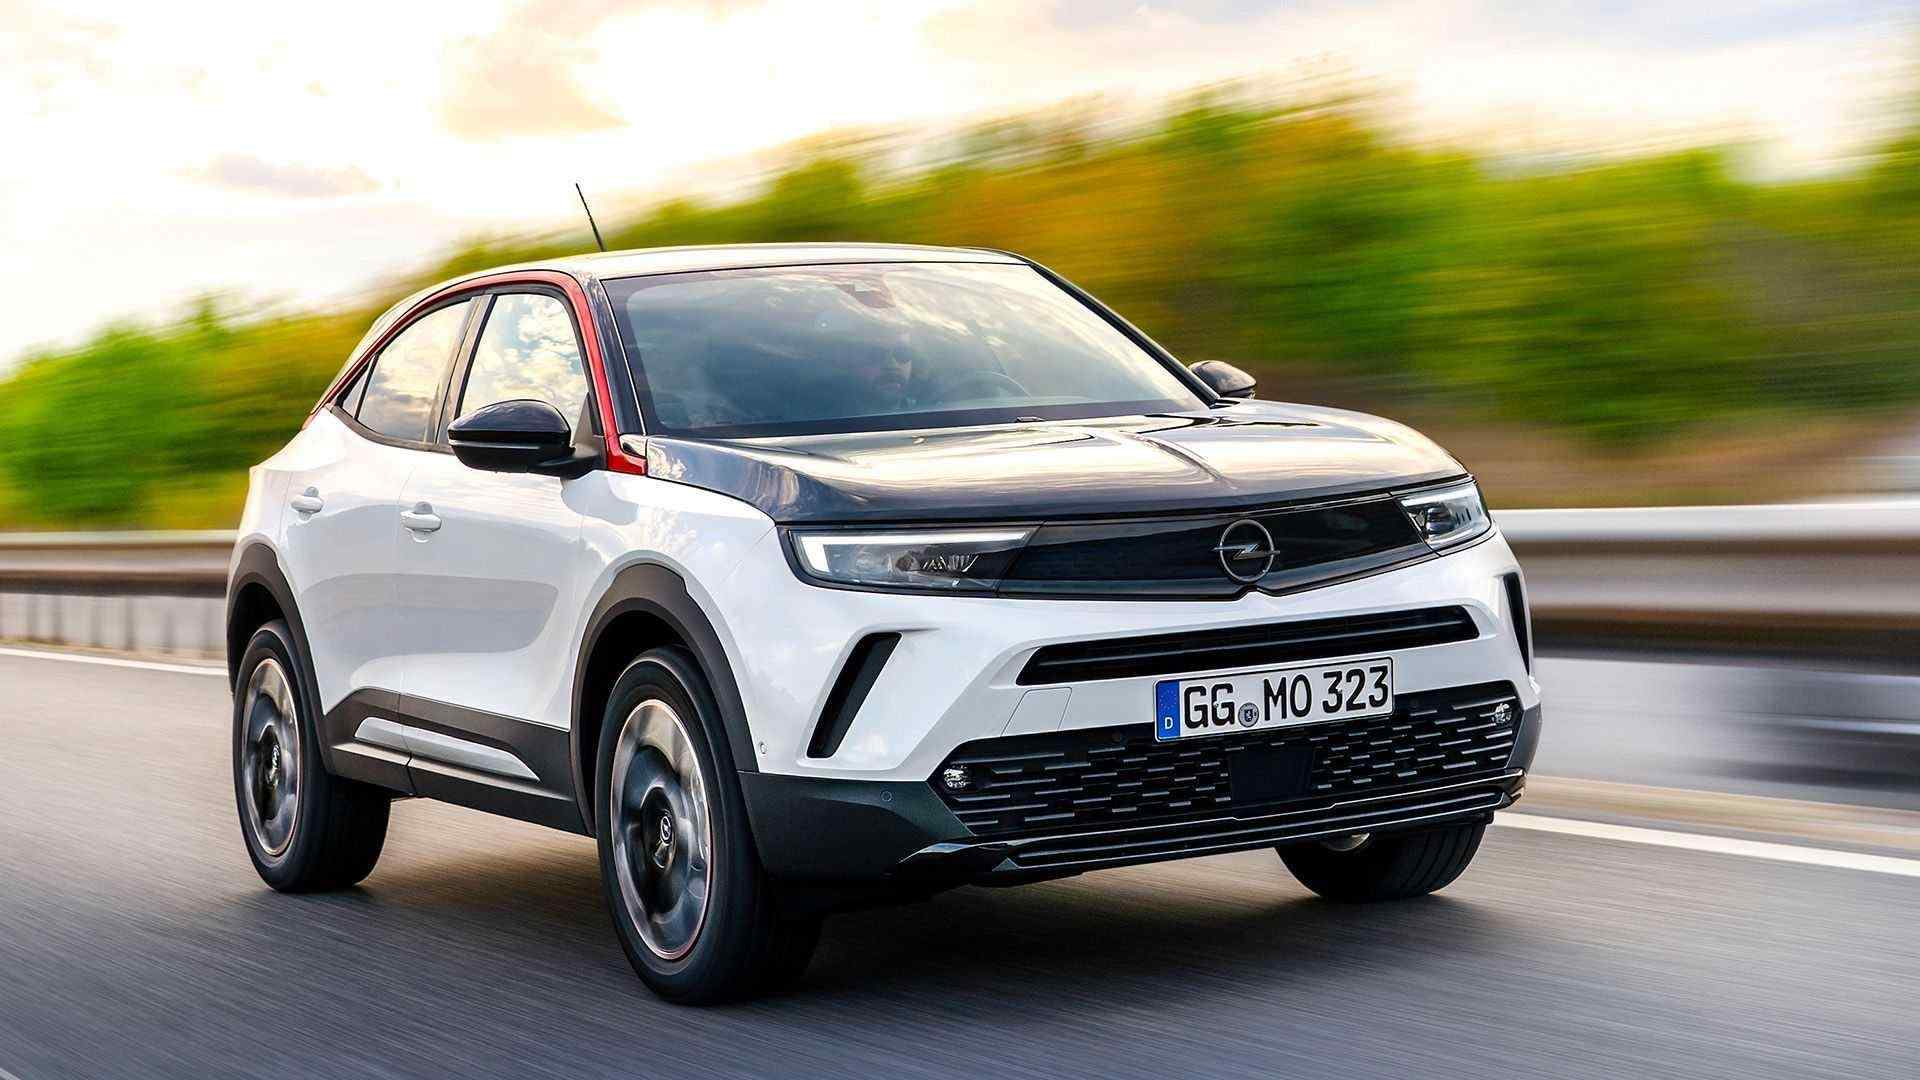 Opel’den Yeni Yıla Özel Araç Fiyat Teklifleri